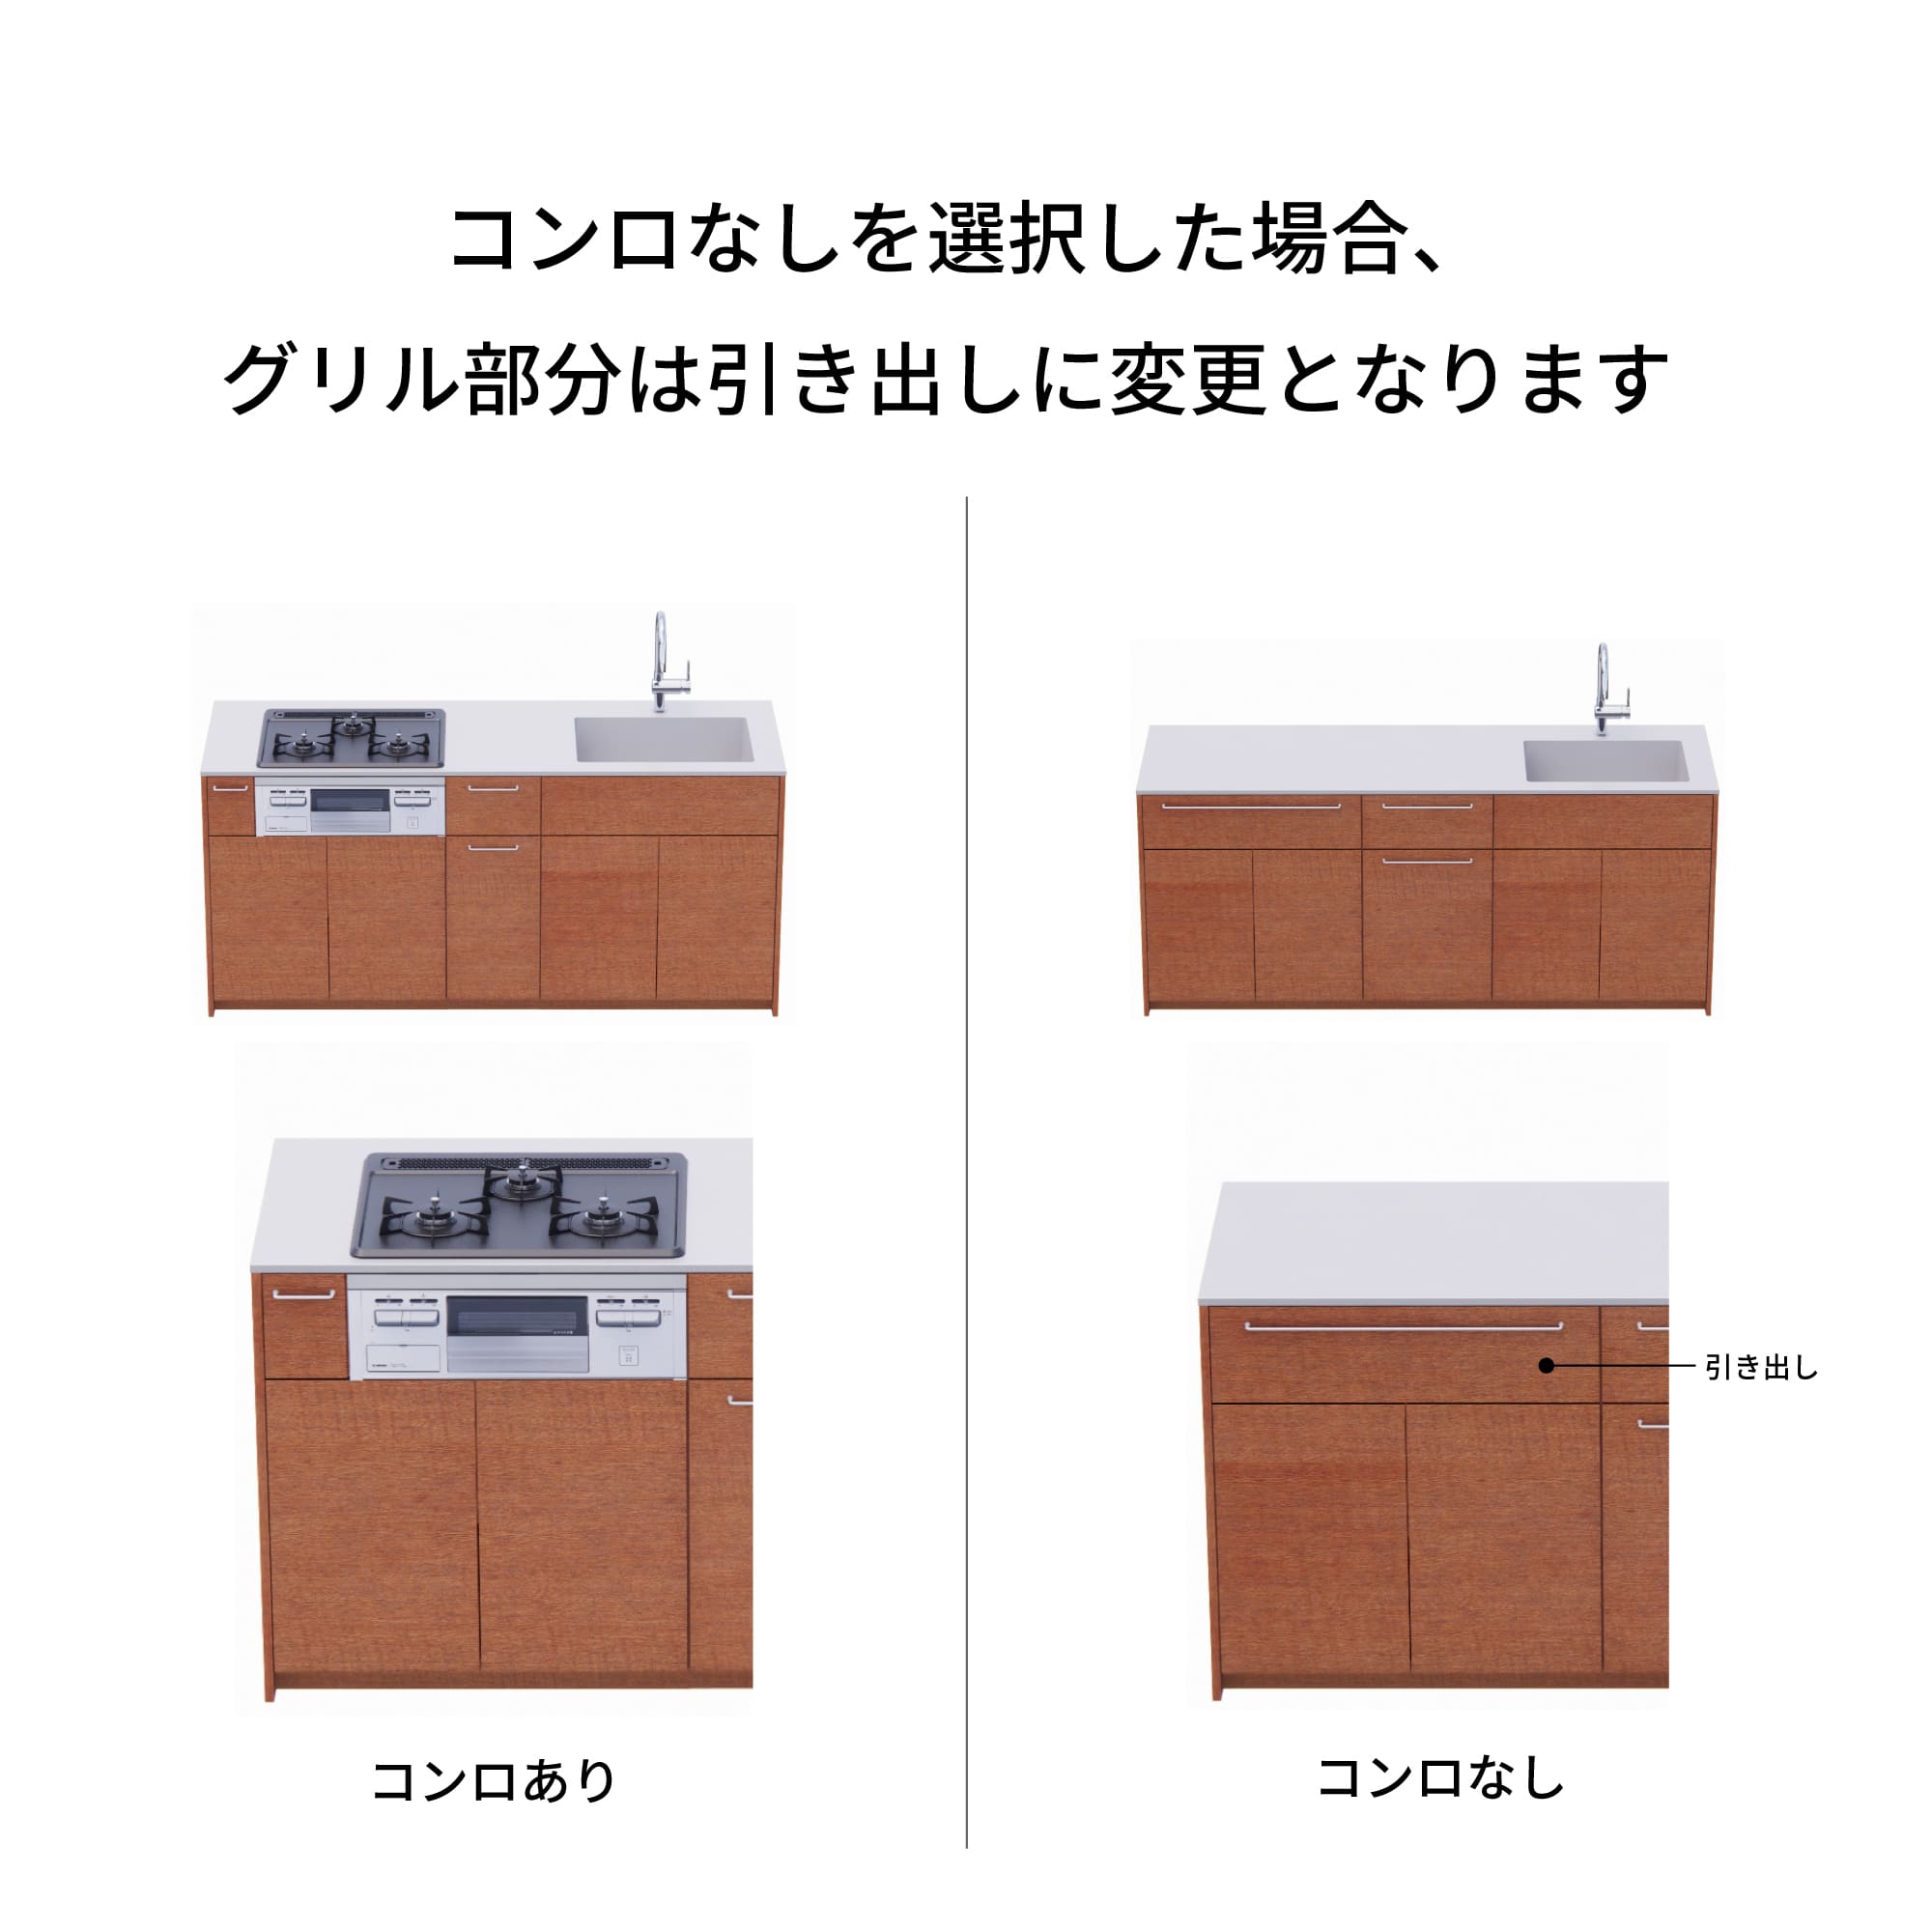 木製システムキッチン 対面型 W2440～2740・コンロなし / オーブンなし / 食洗機なし KB-KC022-42-G183 コンロ無しの場合、通常魚焼きグリルがある部分は引き出しになっています